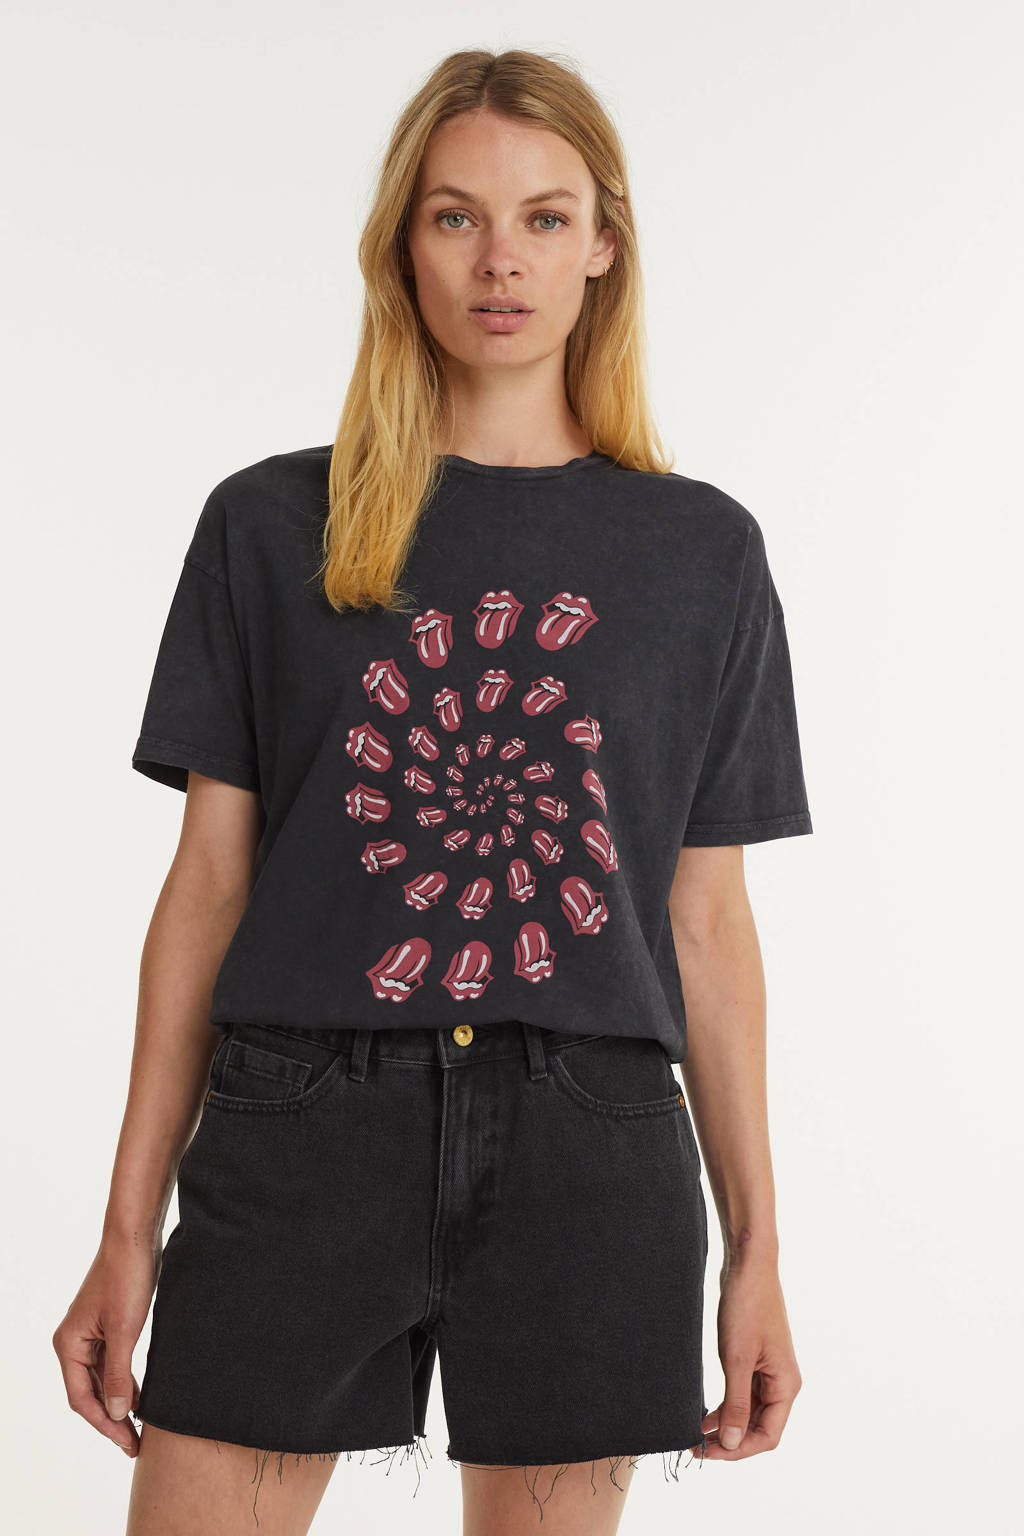 Antraciete dames Catwalk Junkie T-shirt Rolling Stones Twister van biologisch katoen met printopdruk, korte mouwen en ronde hals